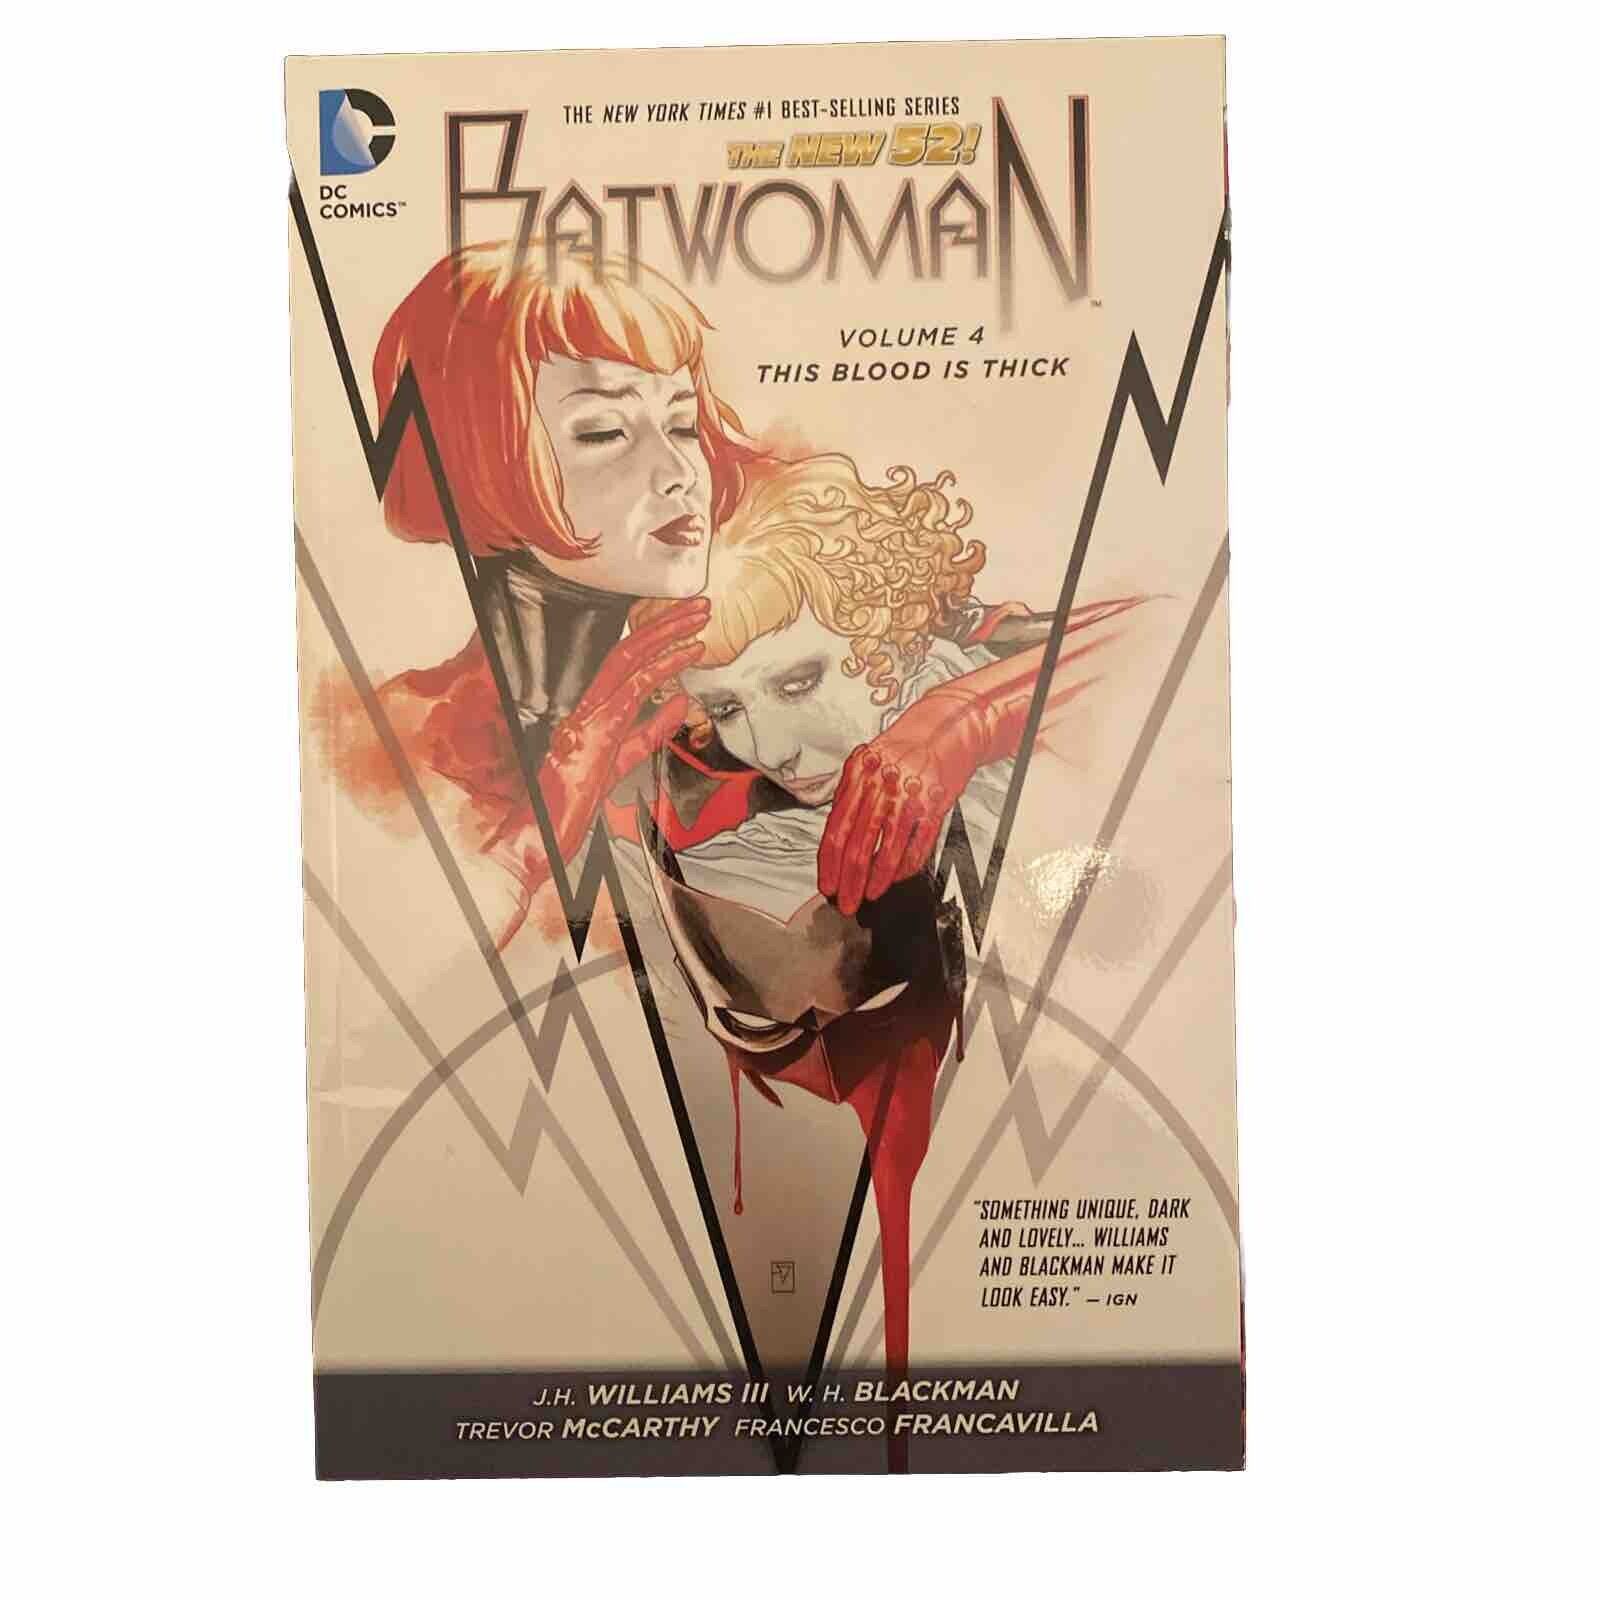 Batwoman #4 (DC Comics, November 2014)